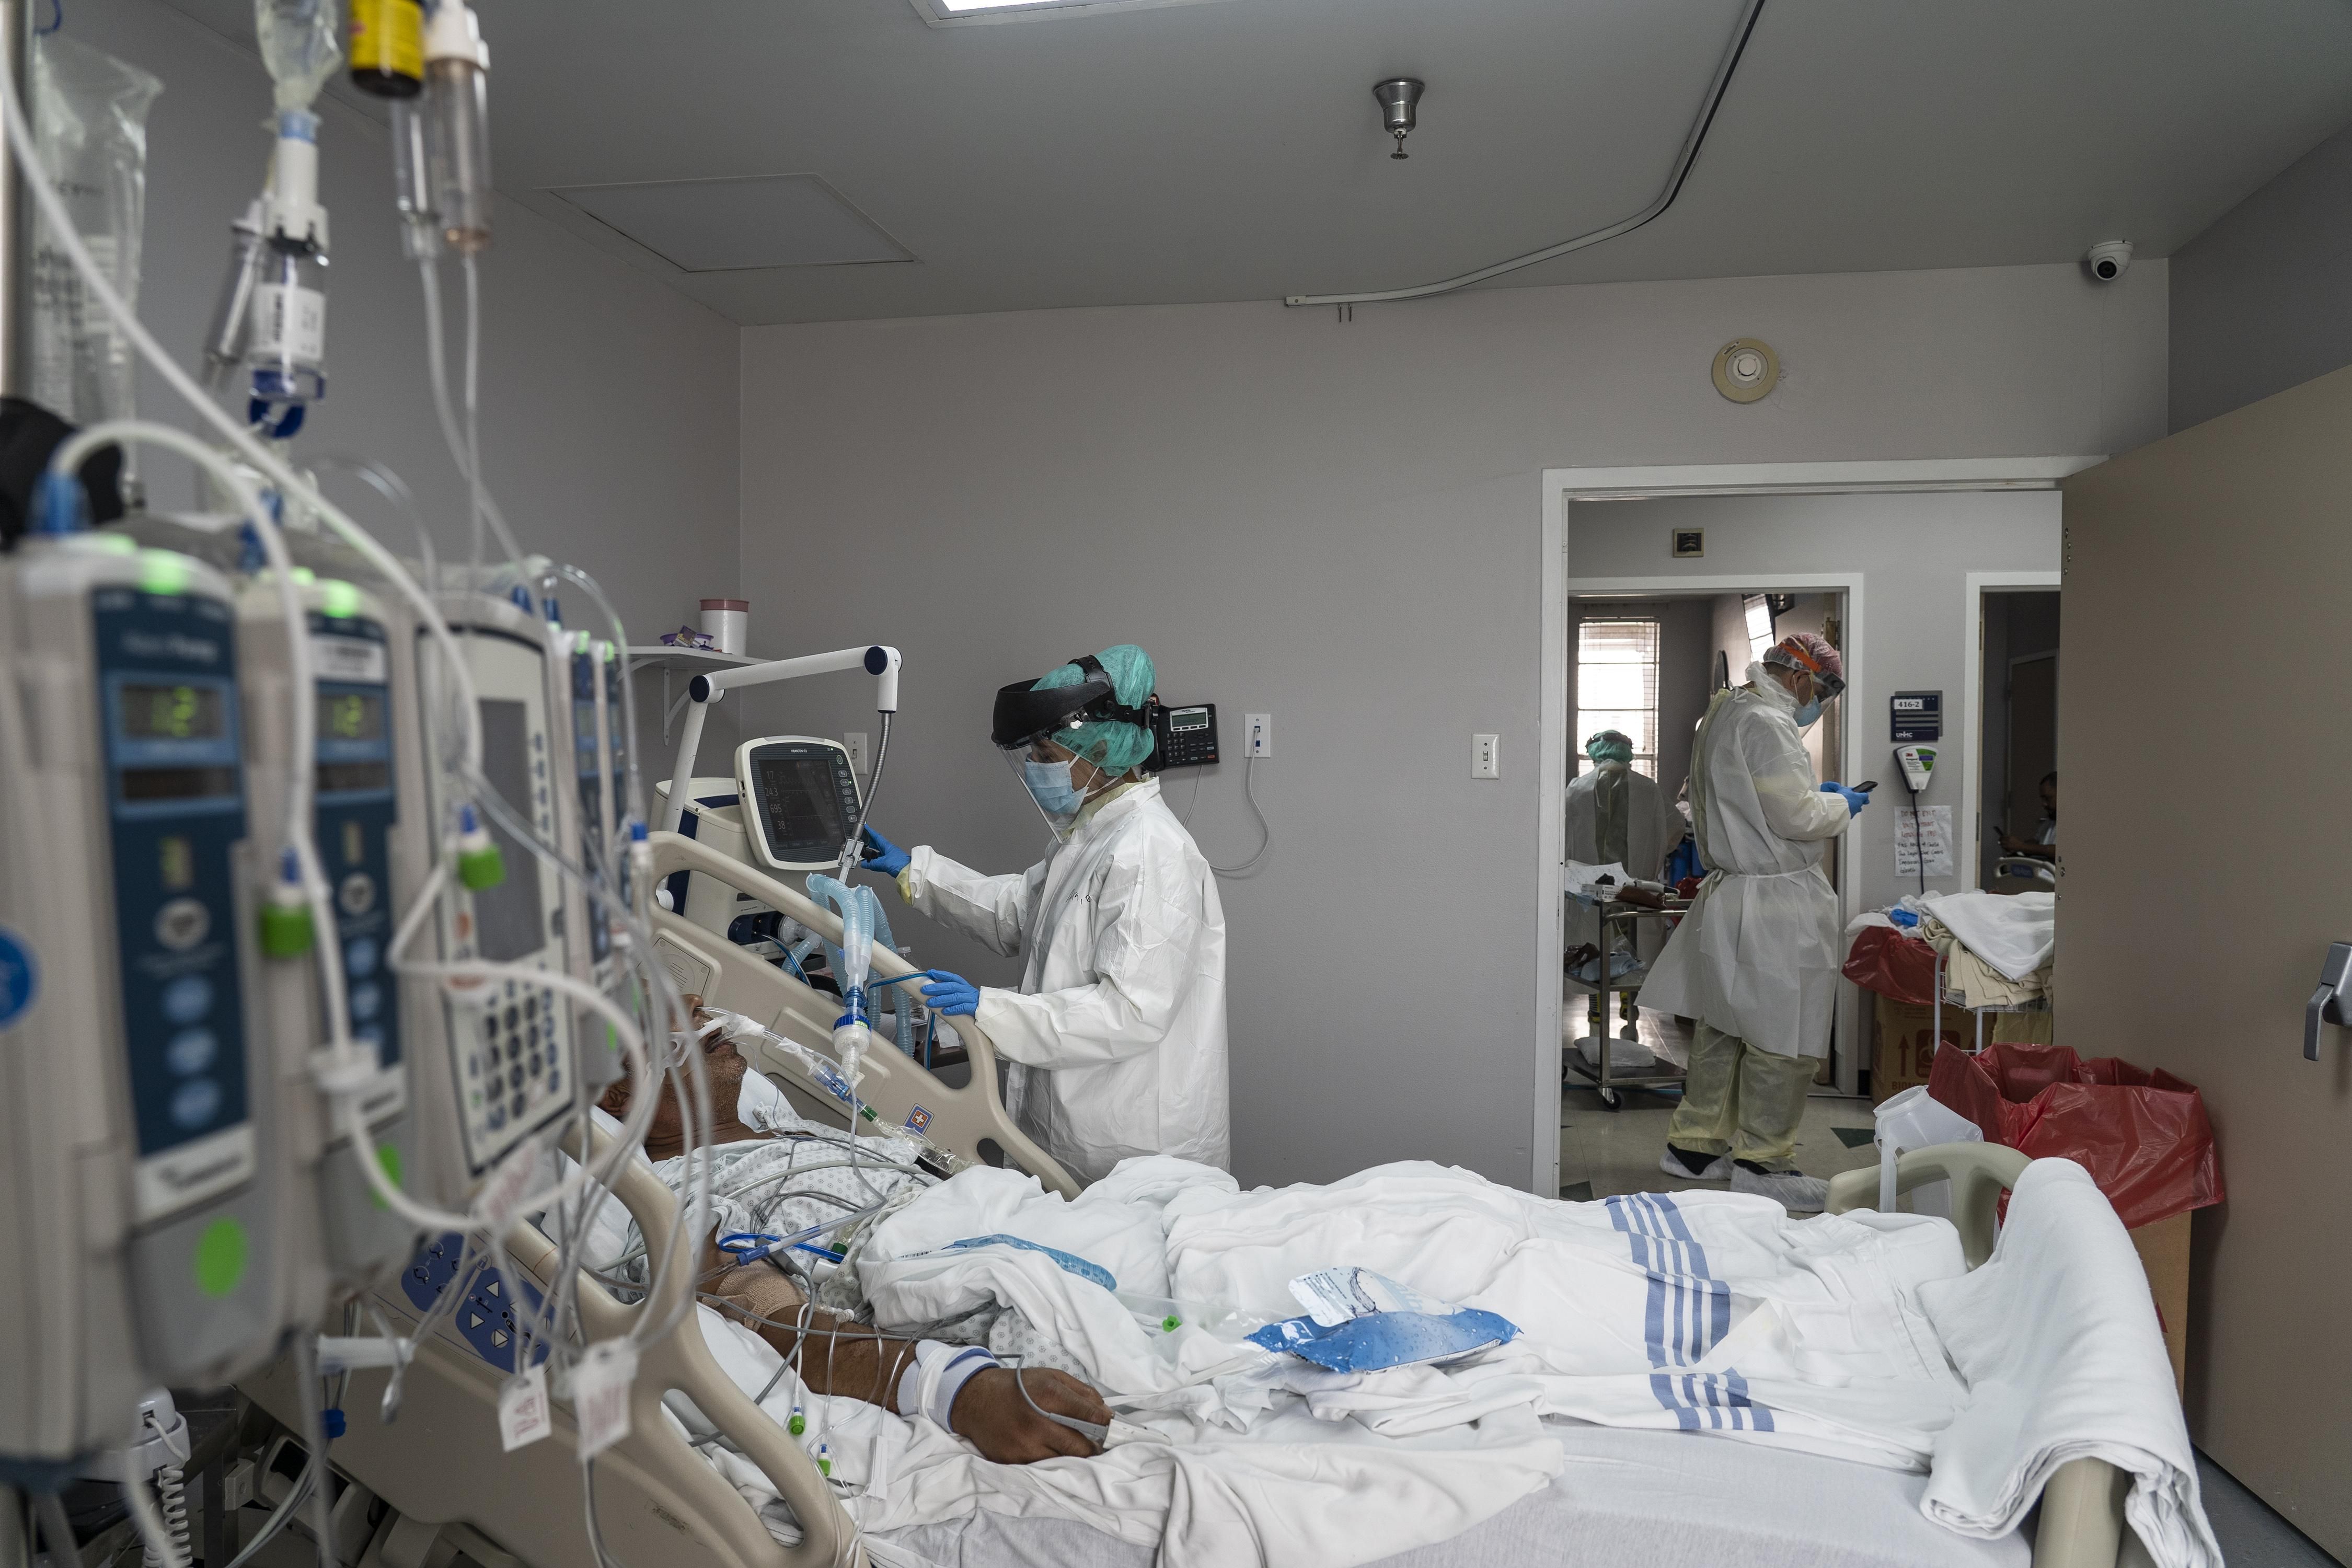 Керівництво обласної лікарні в Херсоні відсторонили через спалах коронавірусу: деталі